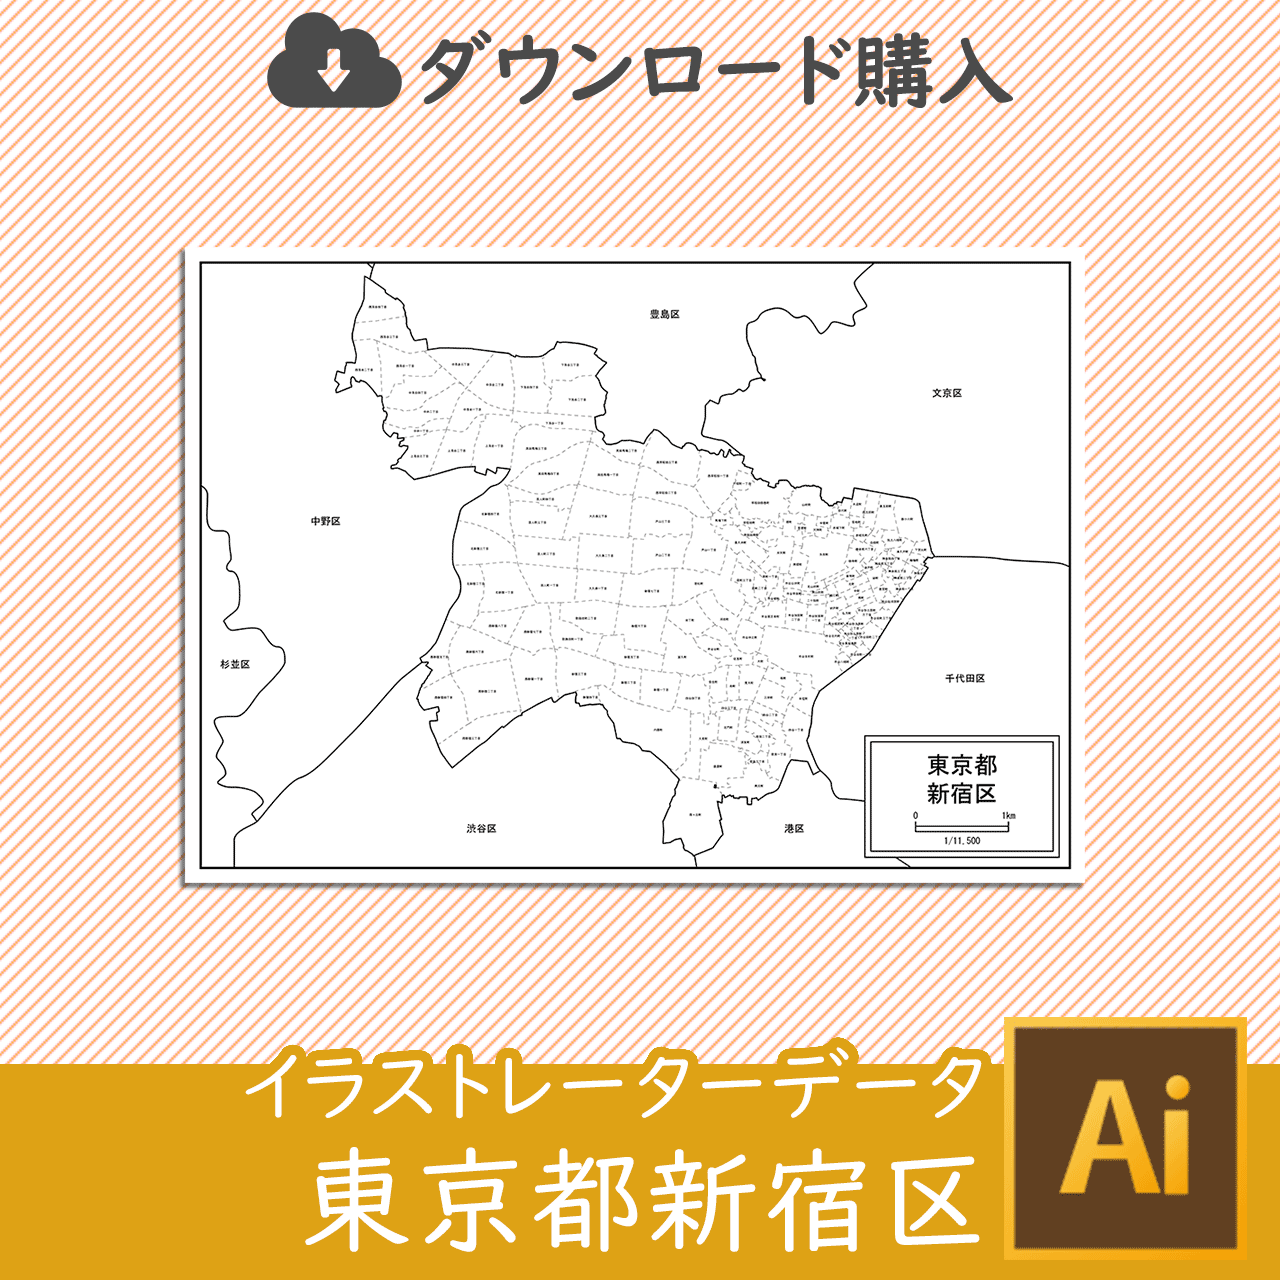 新宿区の白地図のサムネイル画像